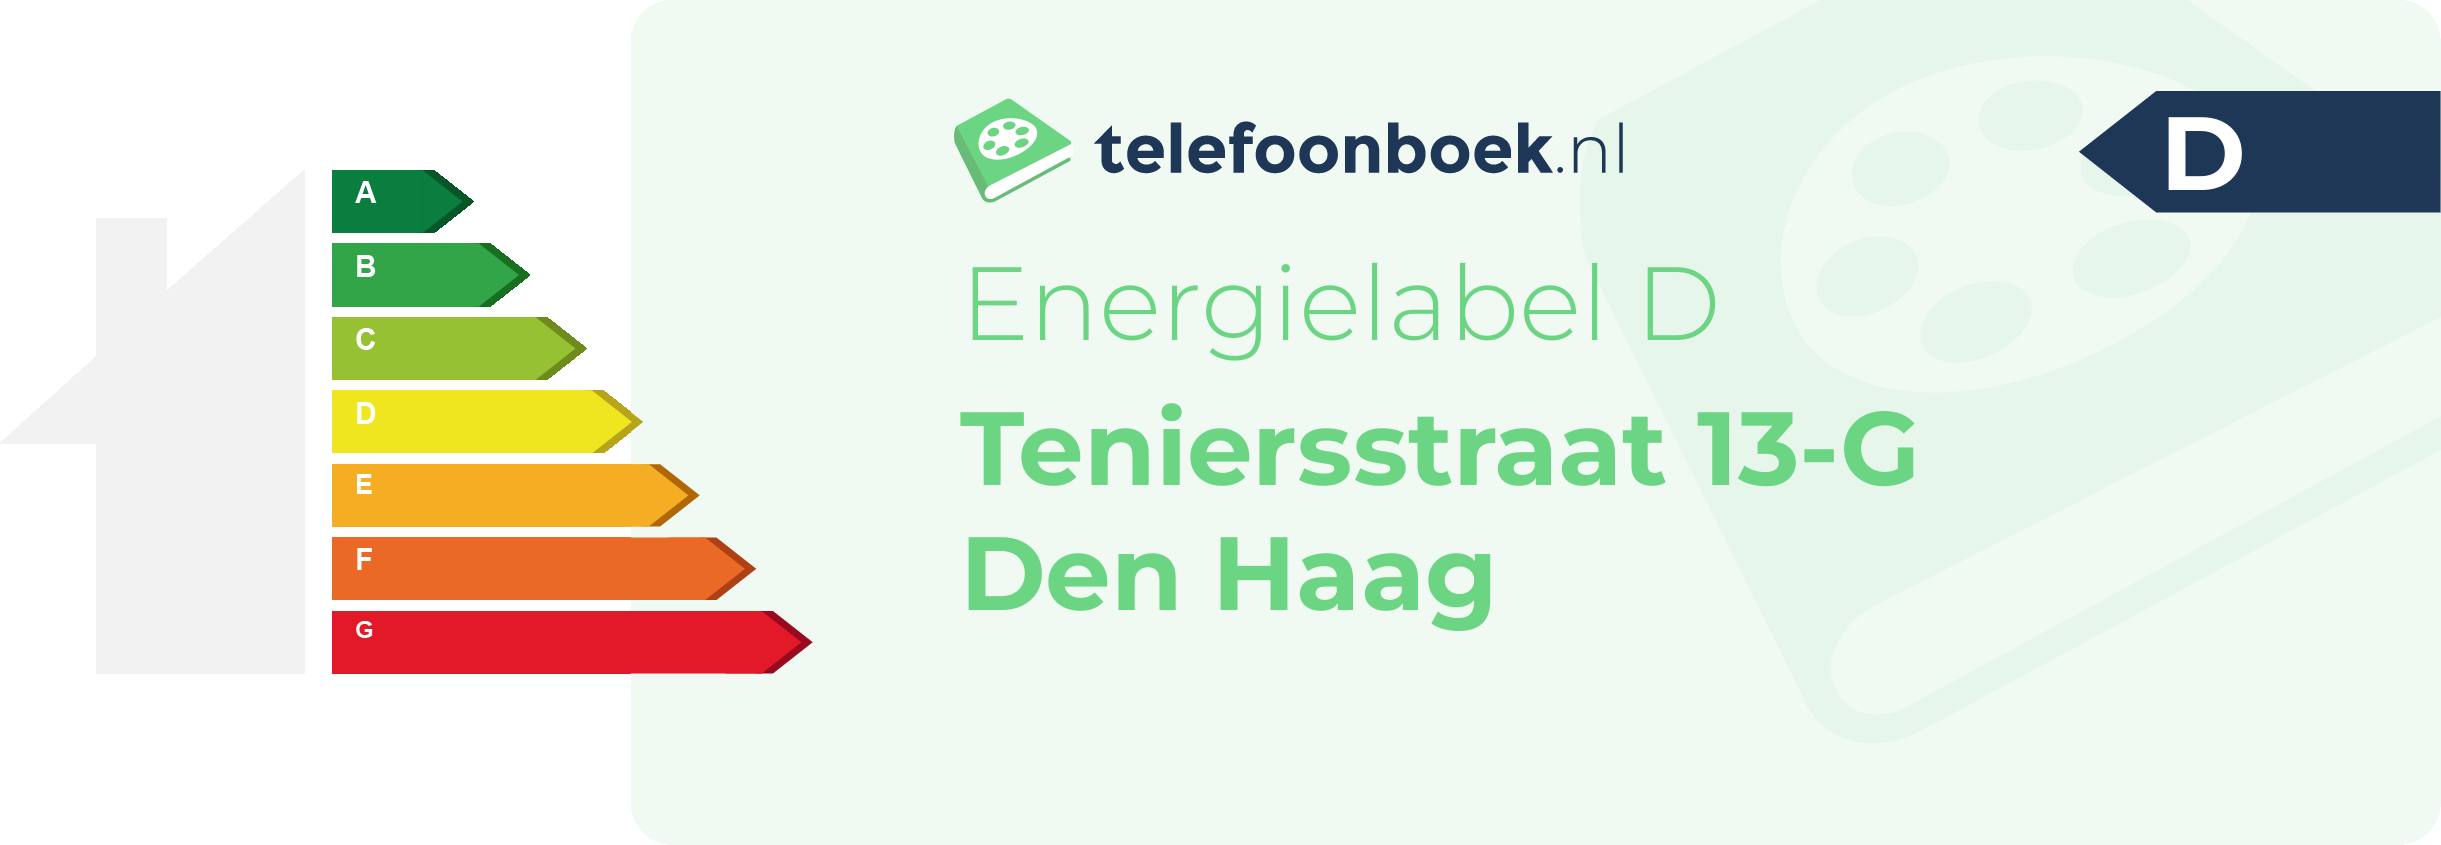 Energielabel Teniersstraat 13-G Den Haag